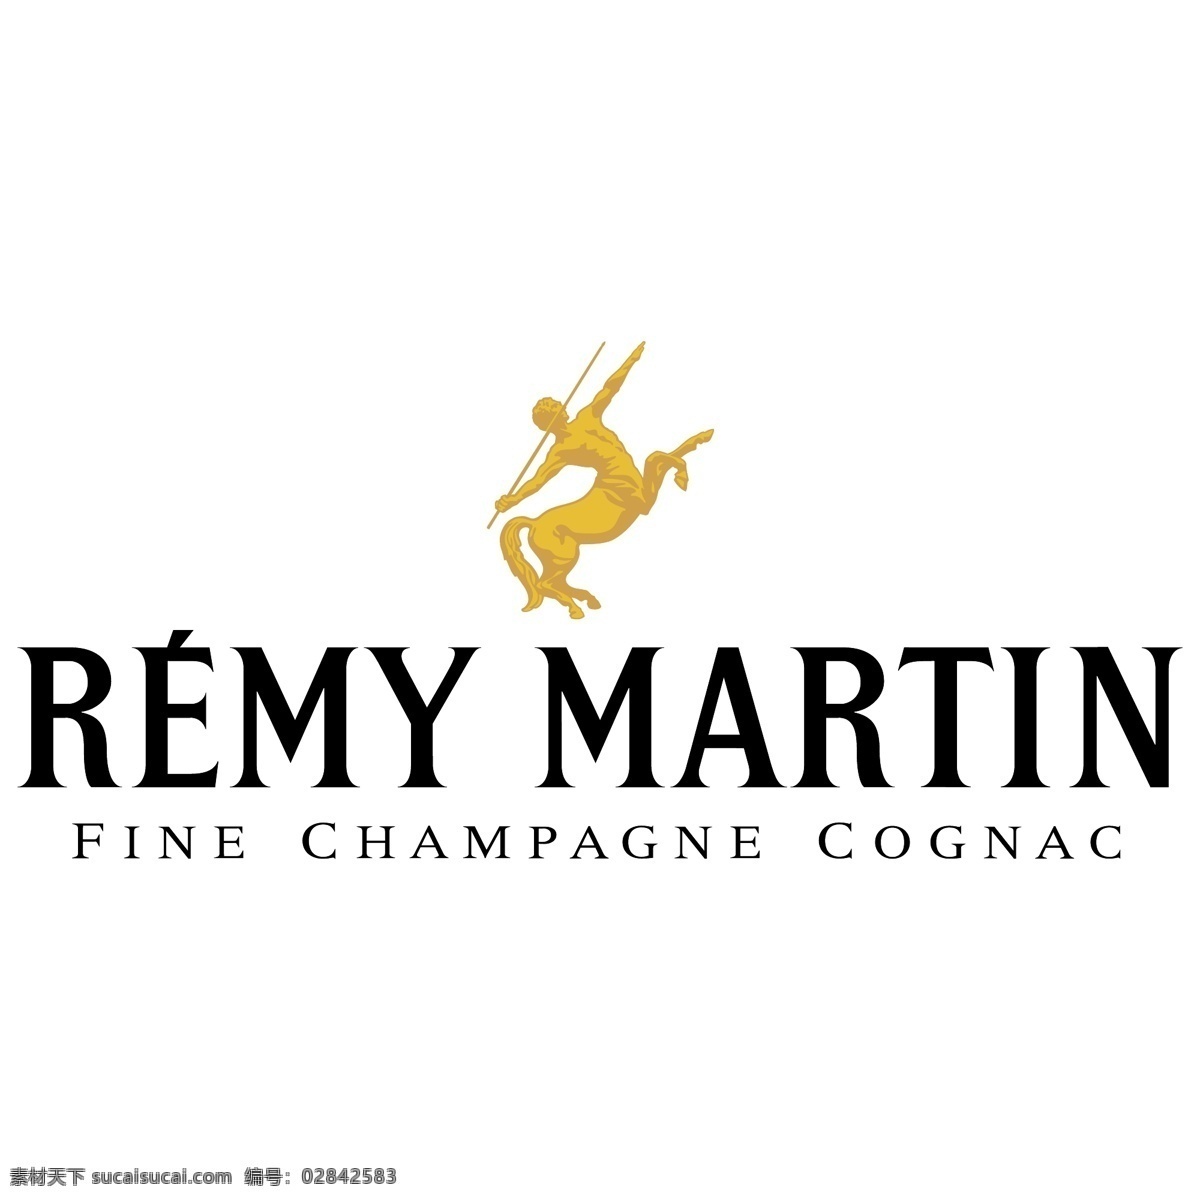 remymartin 人头马 标志 矢量图 remy martin 标识标志图标 小图标 矢量图库